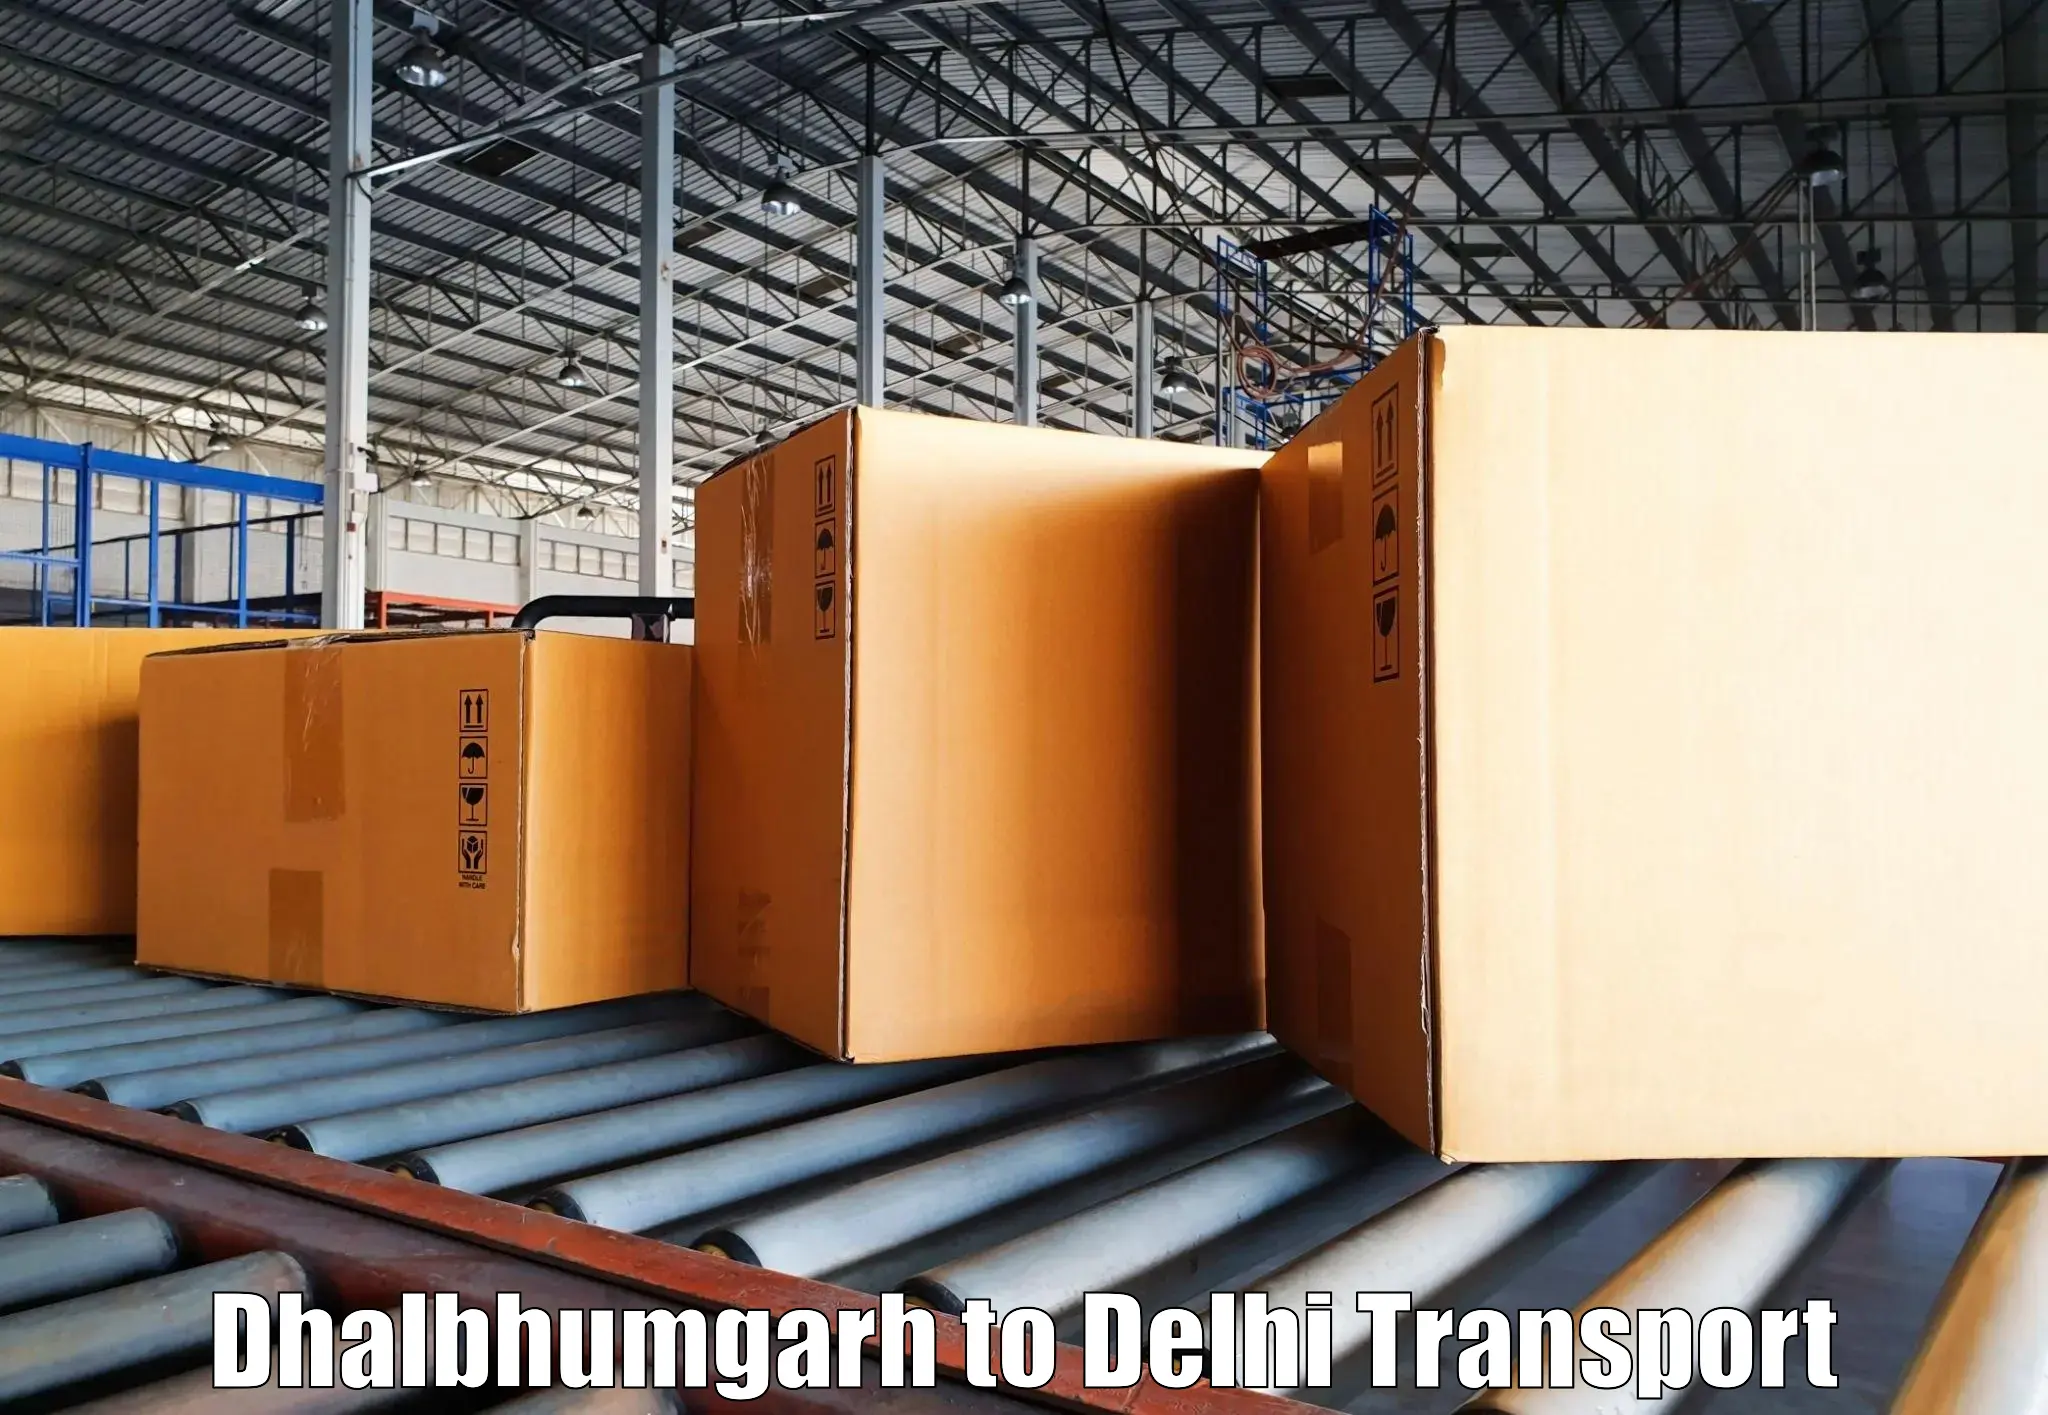 Road transport services Dhalbhumgarh to IIT Delhi